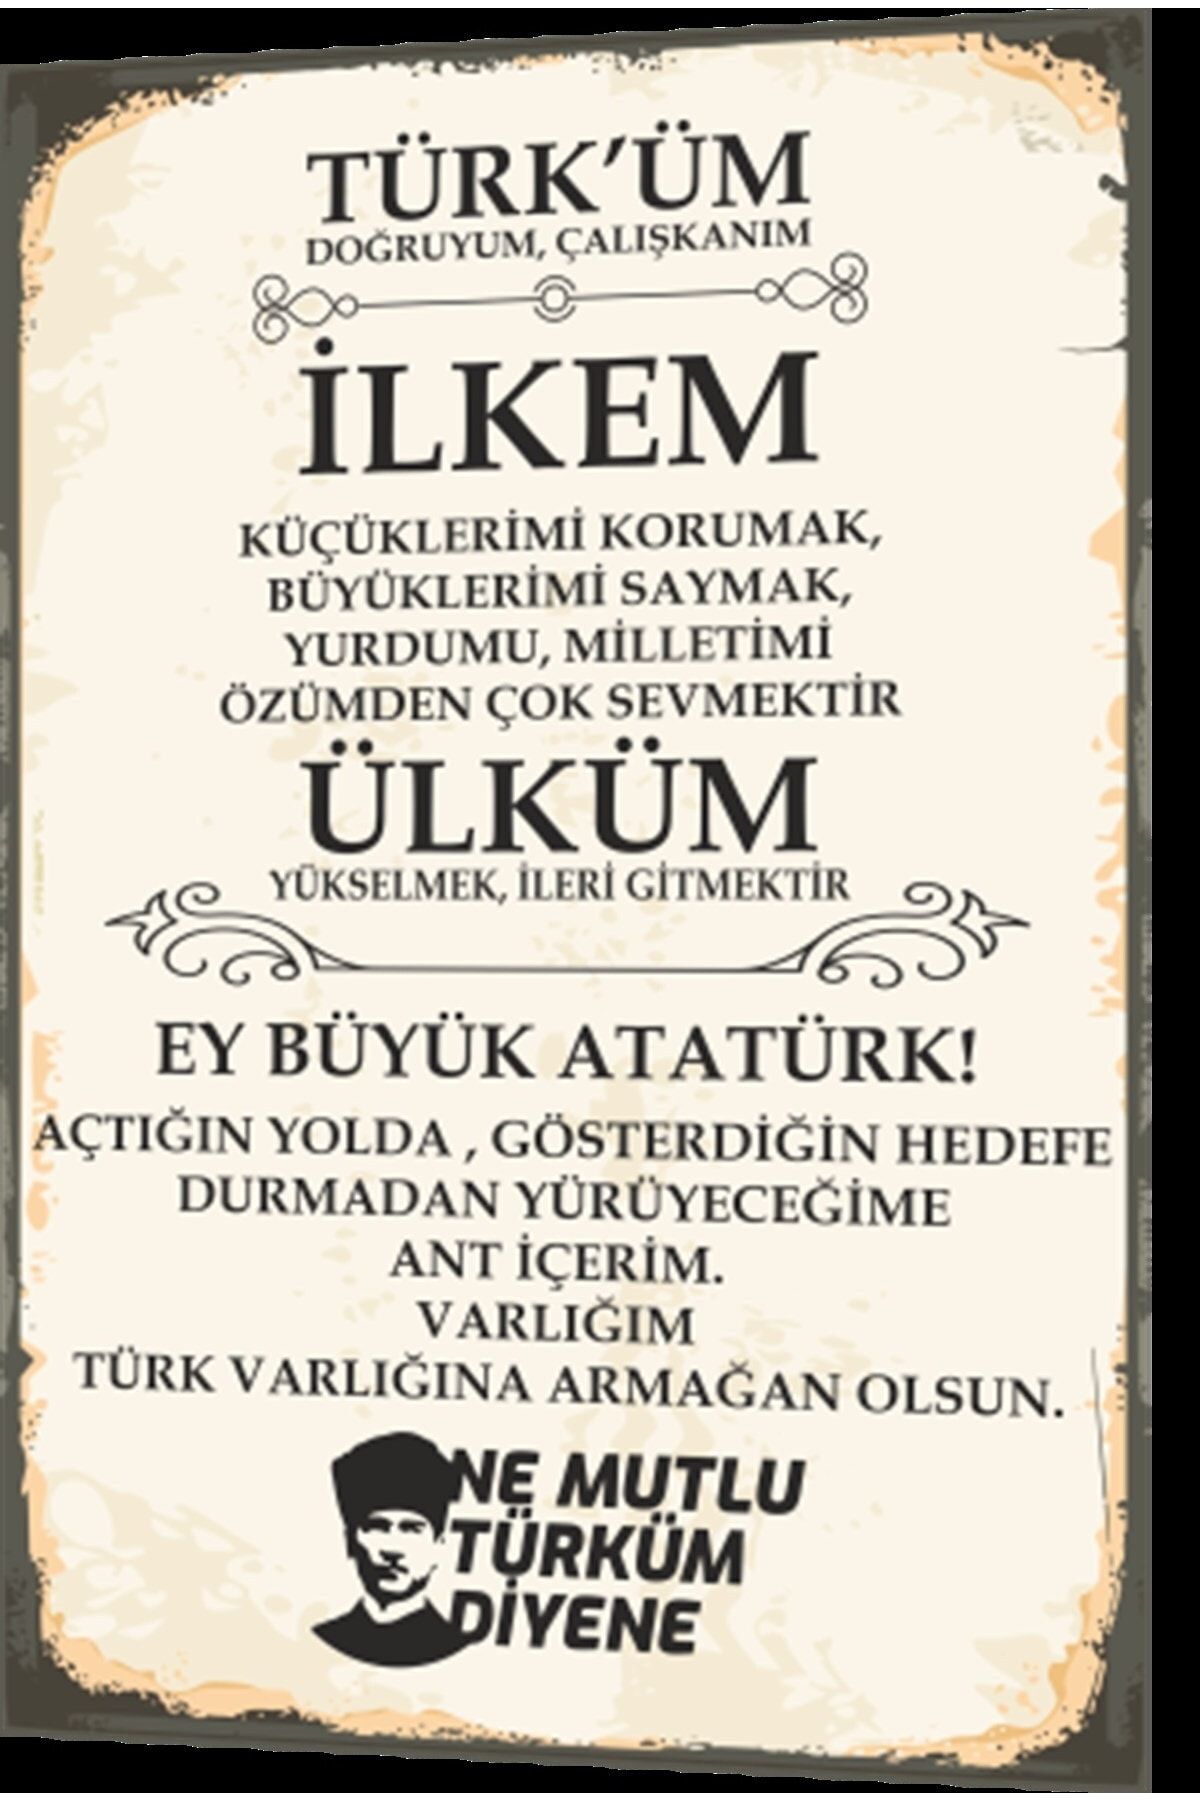 Hayat Poster Andımız Türküm Doğruyum Çalışkanım Atatürk Retro Ahşap Poster